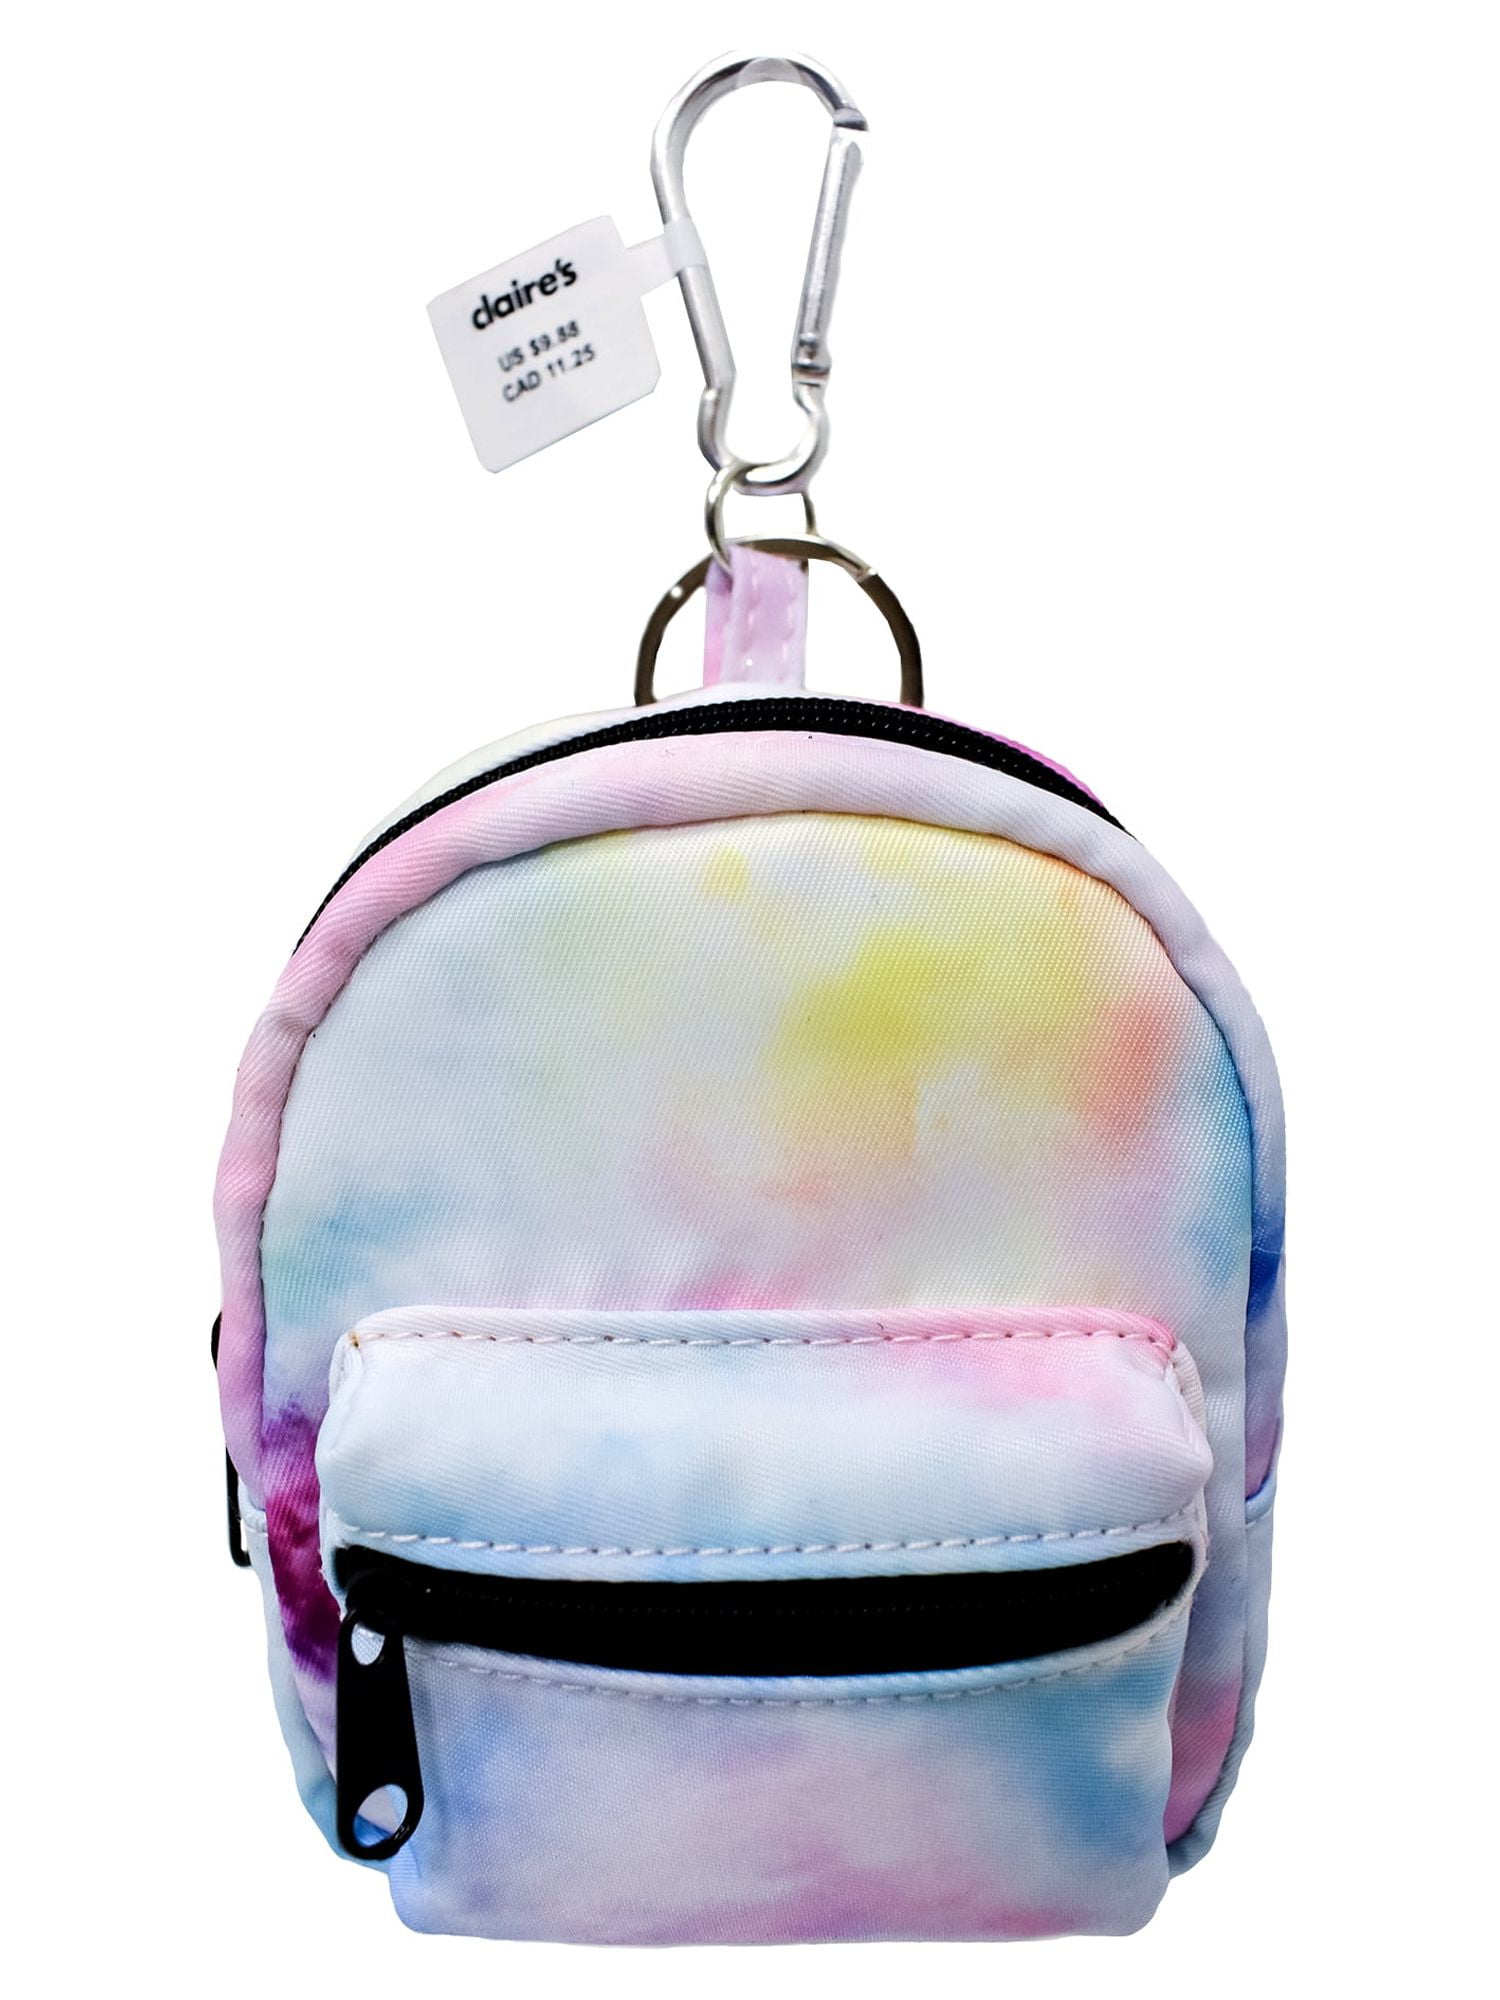 rainbow keychain in bulk color bag